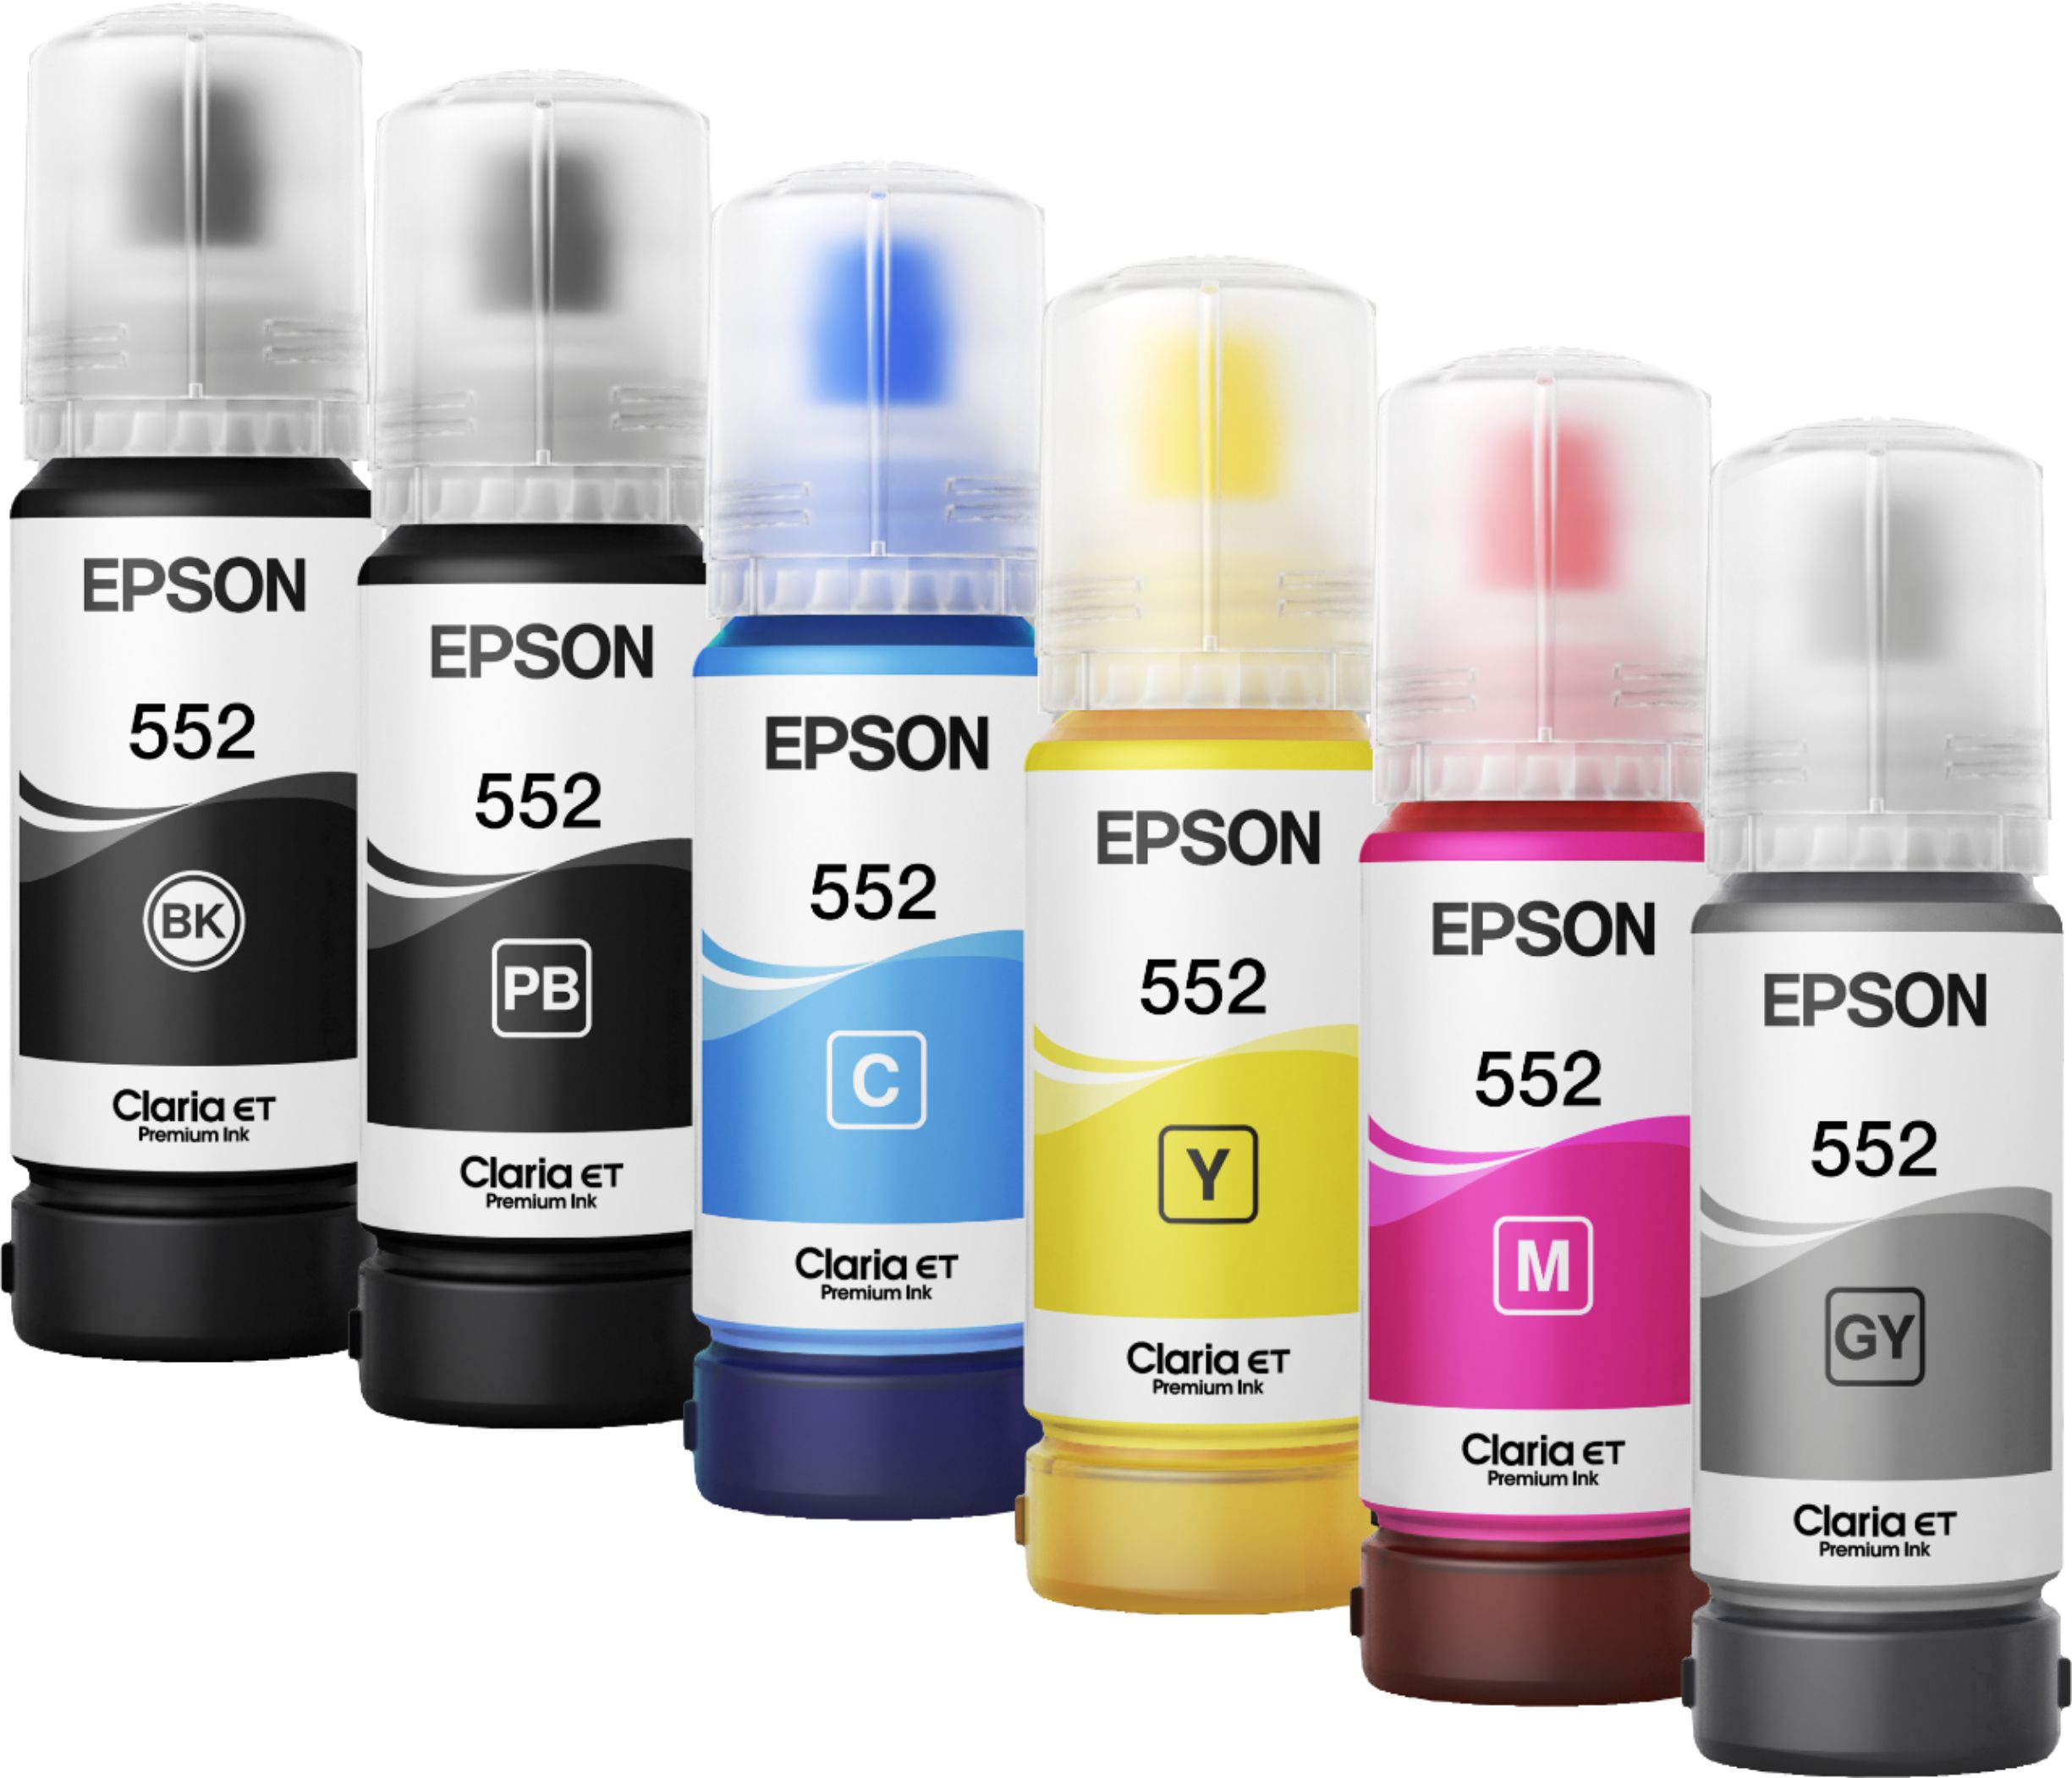  Epson EcoTank Photo ET-8500 Impresora inalámbrica a color todo  en uno Supertank con escáner, copiadora, Ethernet y pantalla táctil a color  de 4.3 pulgadas, blanco, grande : Productos de Oficina